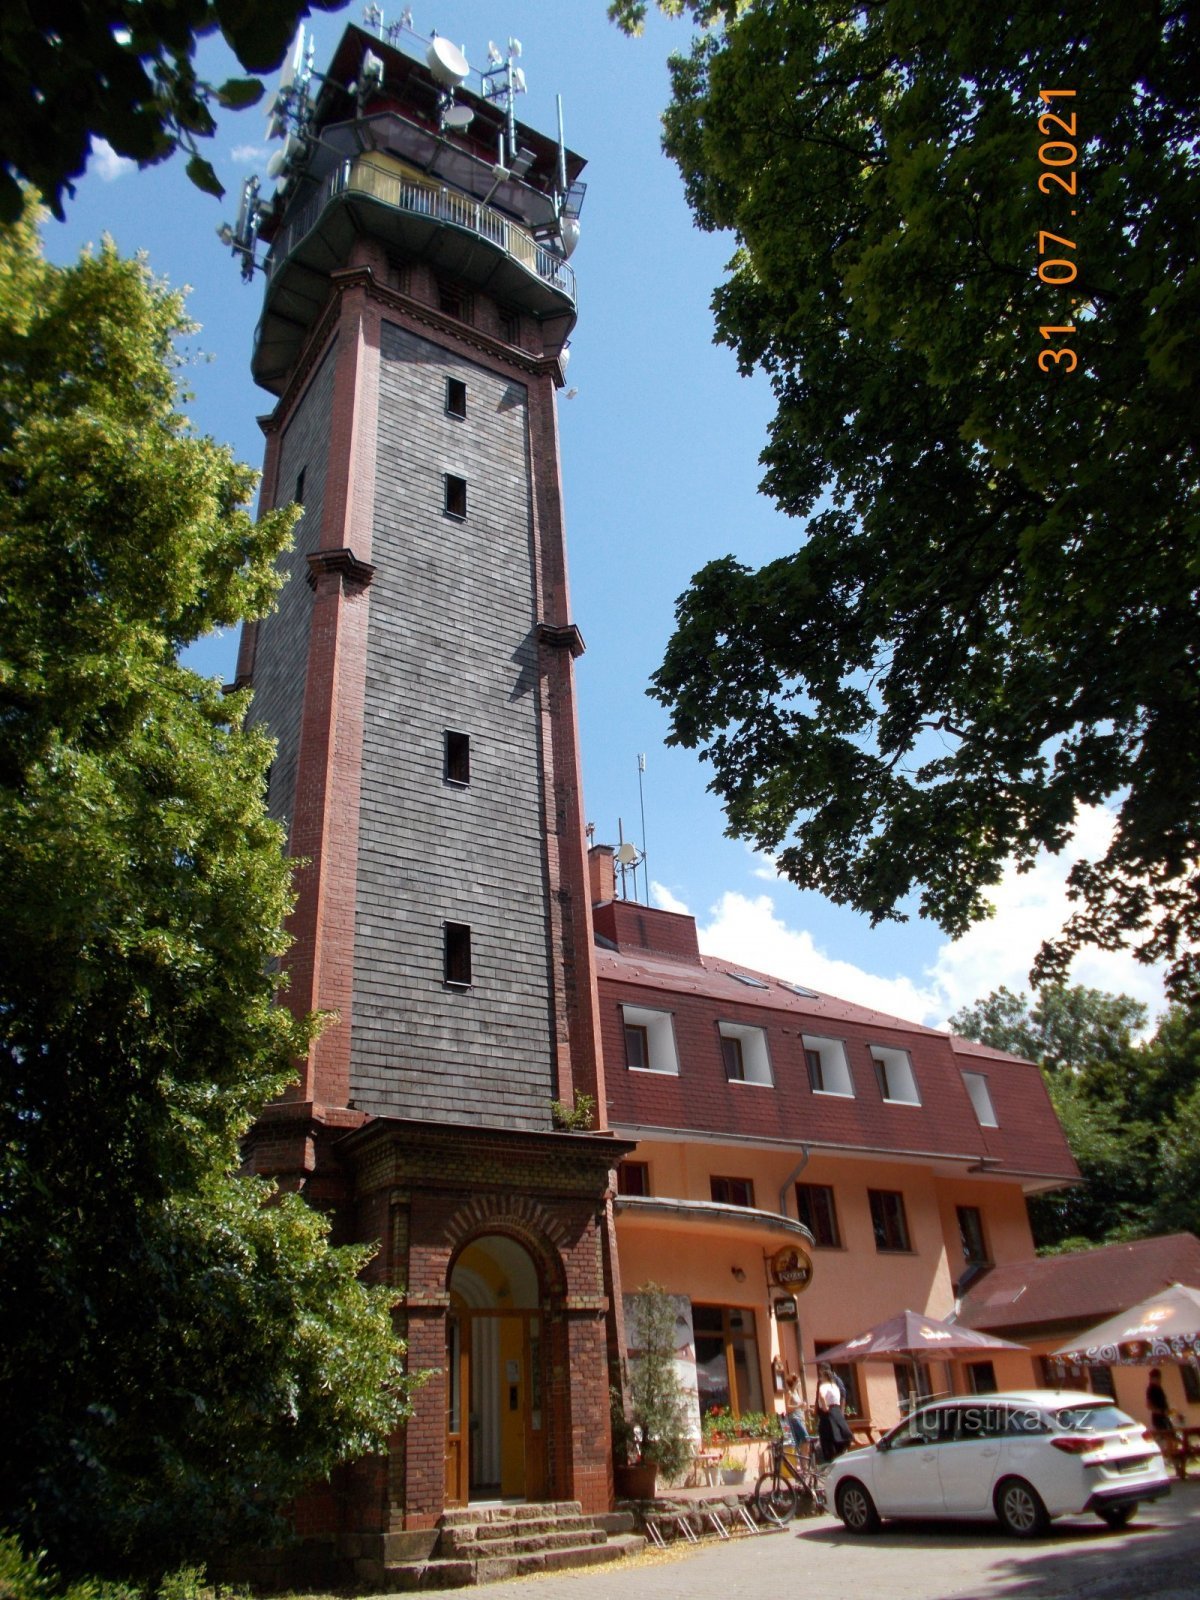 Torre de vigia Tichánka